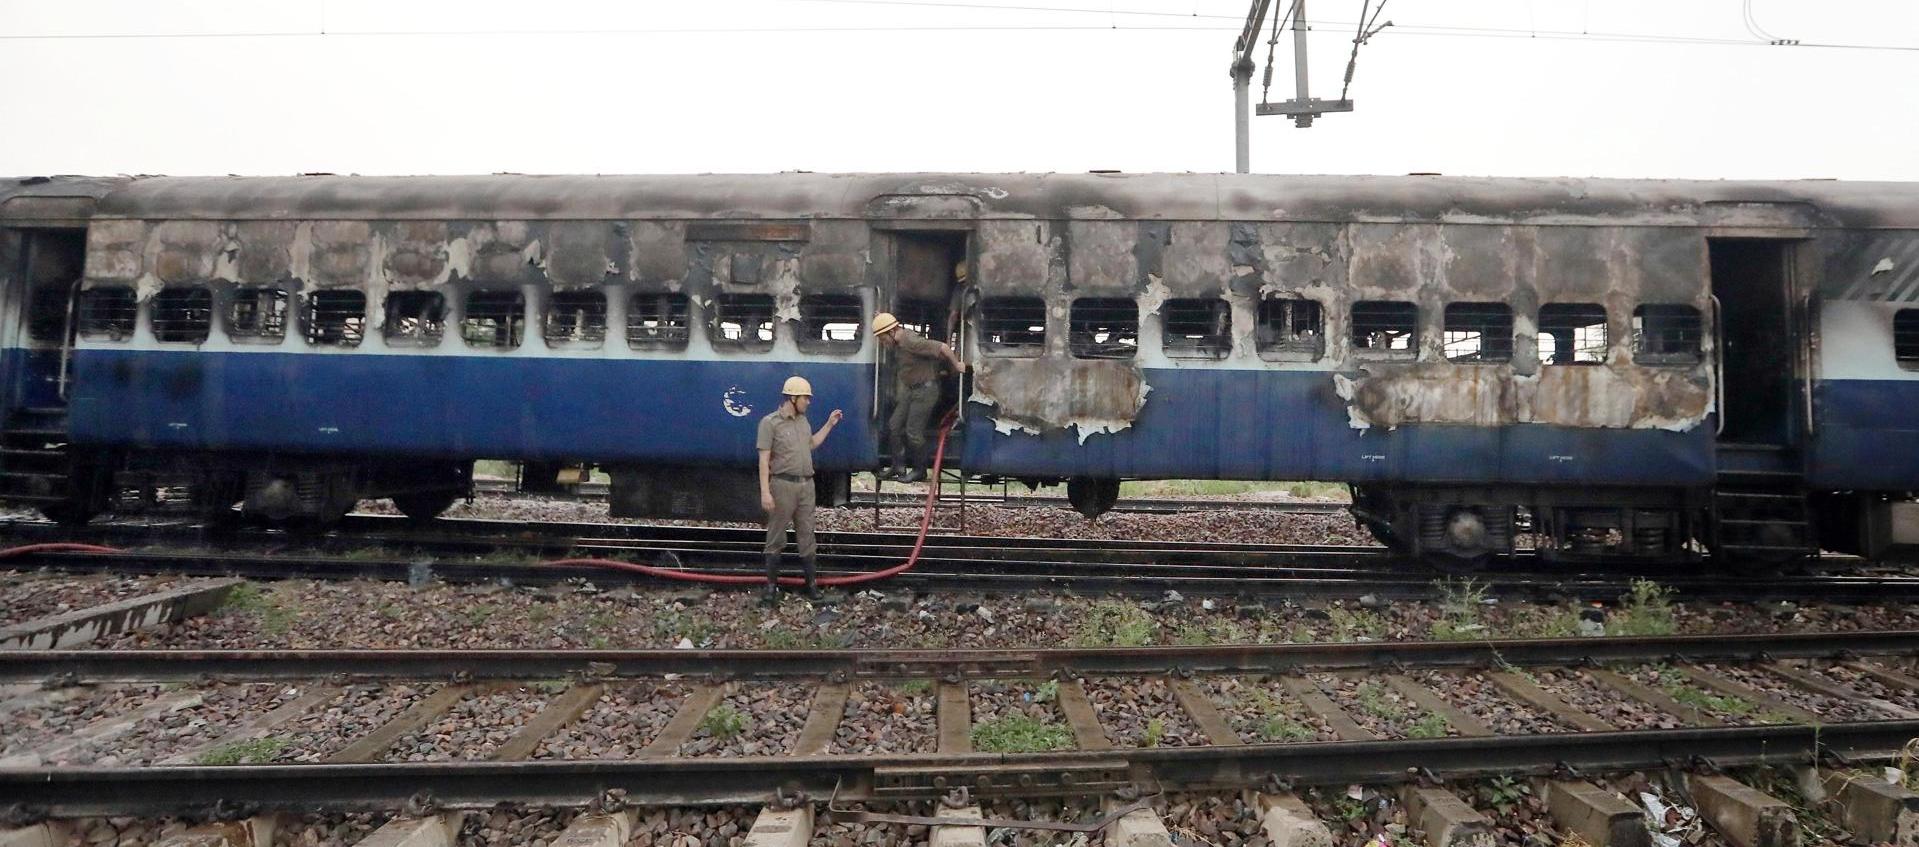 El tren en cuyo interior se presentó una explosión y luego un incendio